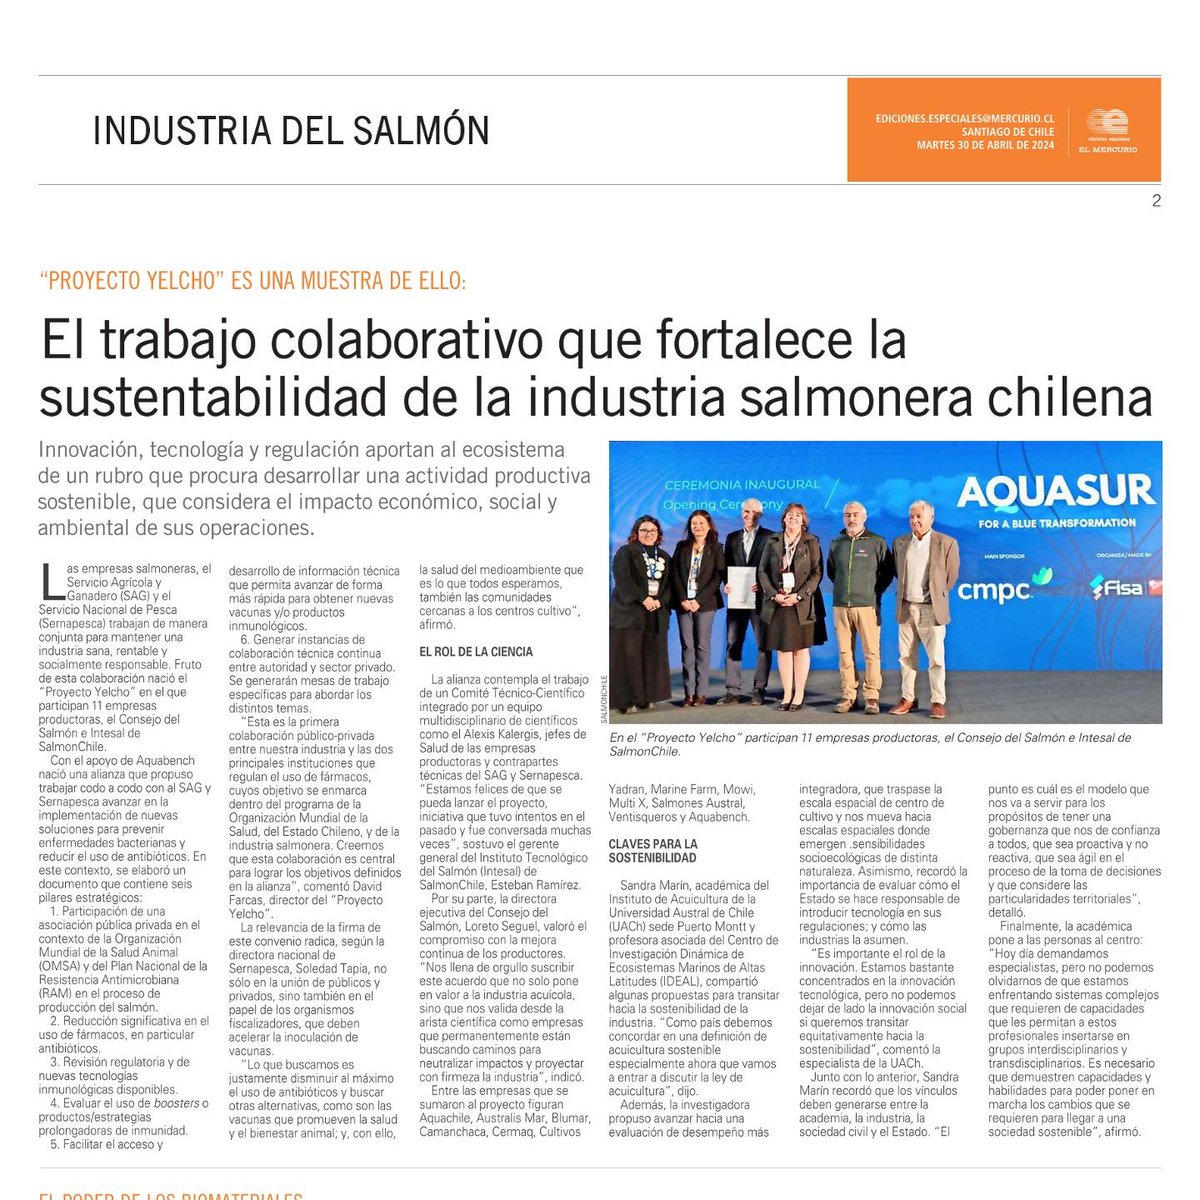 Académica Sandra Marín de @SedeUACh aporta claves para avanzar hacia la sostenibilidad de la industria salmonera